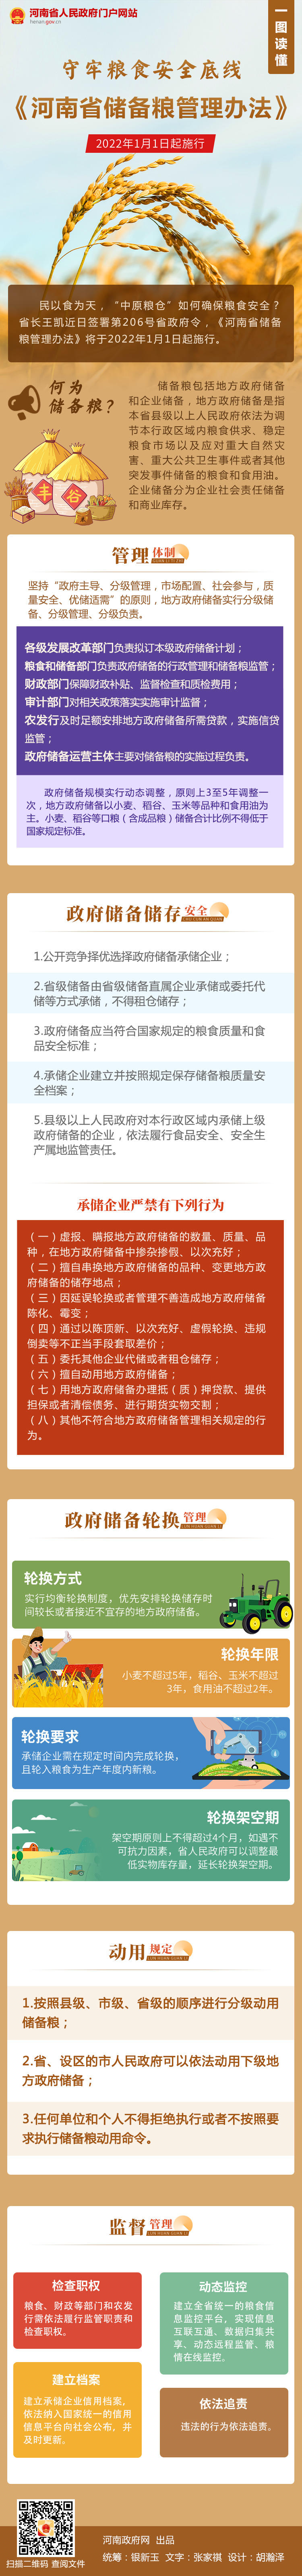 【一图读懂】《河南省储备粮管理办法》2022年1月1日起施行